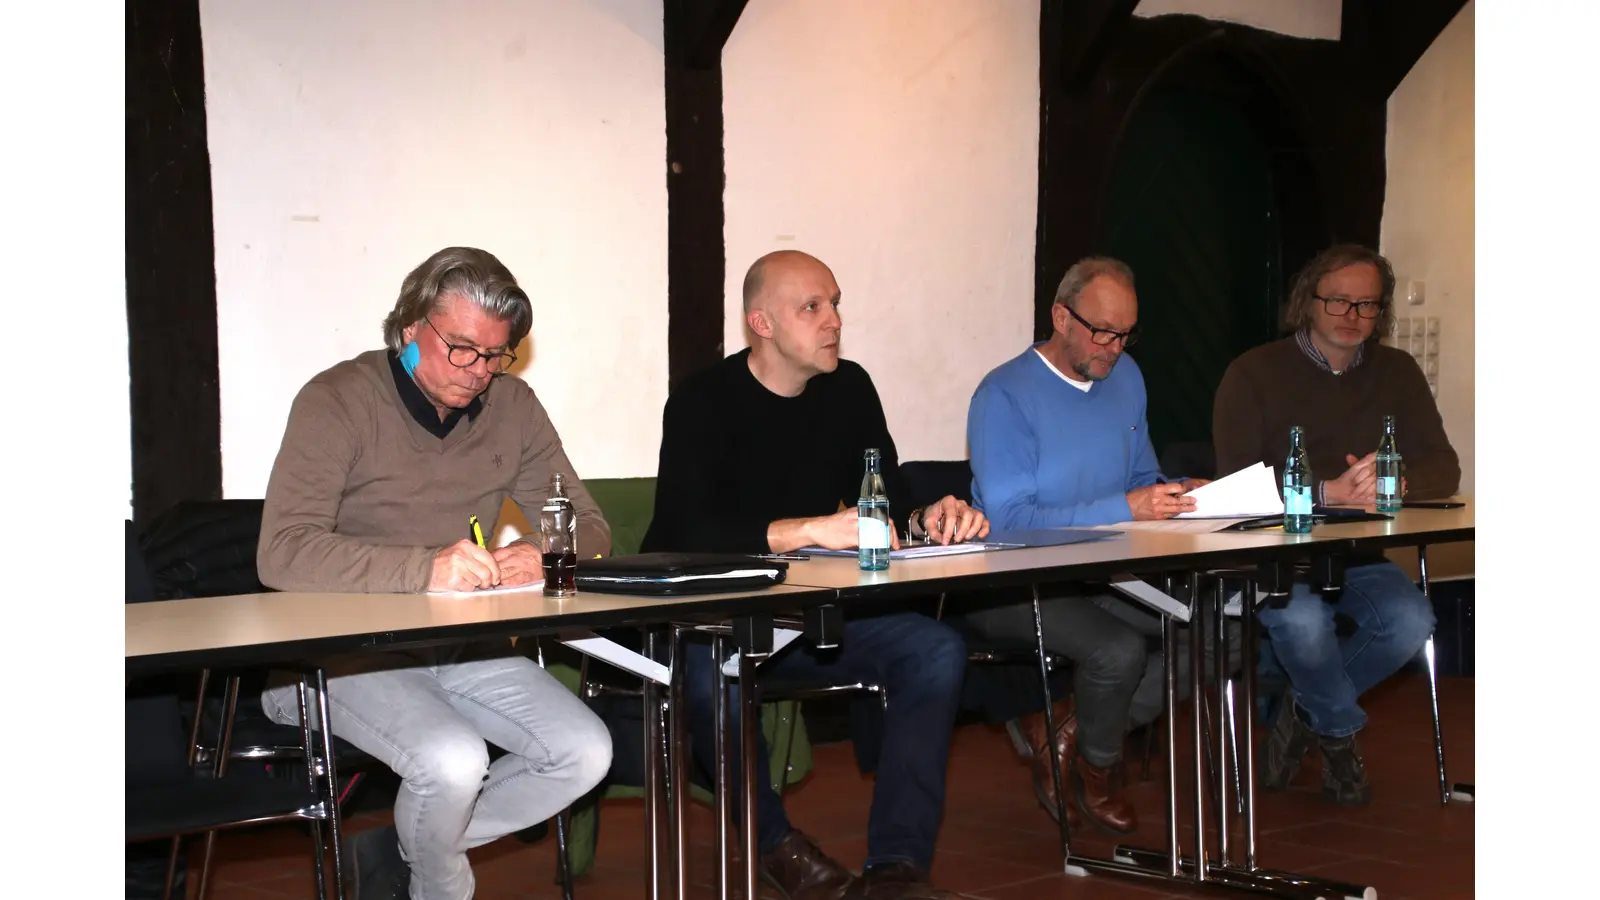 In Auflösung: Thorsten Schäker (v.li.) ist schon zurückgetreten, Christoph Rüther, Michael Schaer und Frank Ludowig haben ihren Rückzug zu Beginn des nächsten Jahres angekündigt.